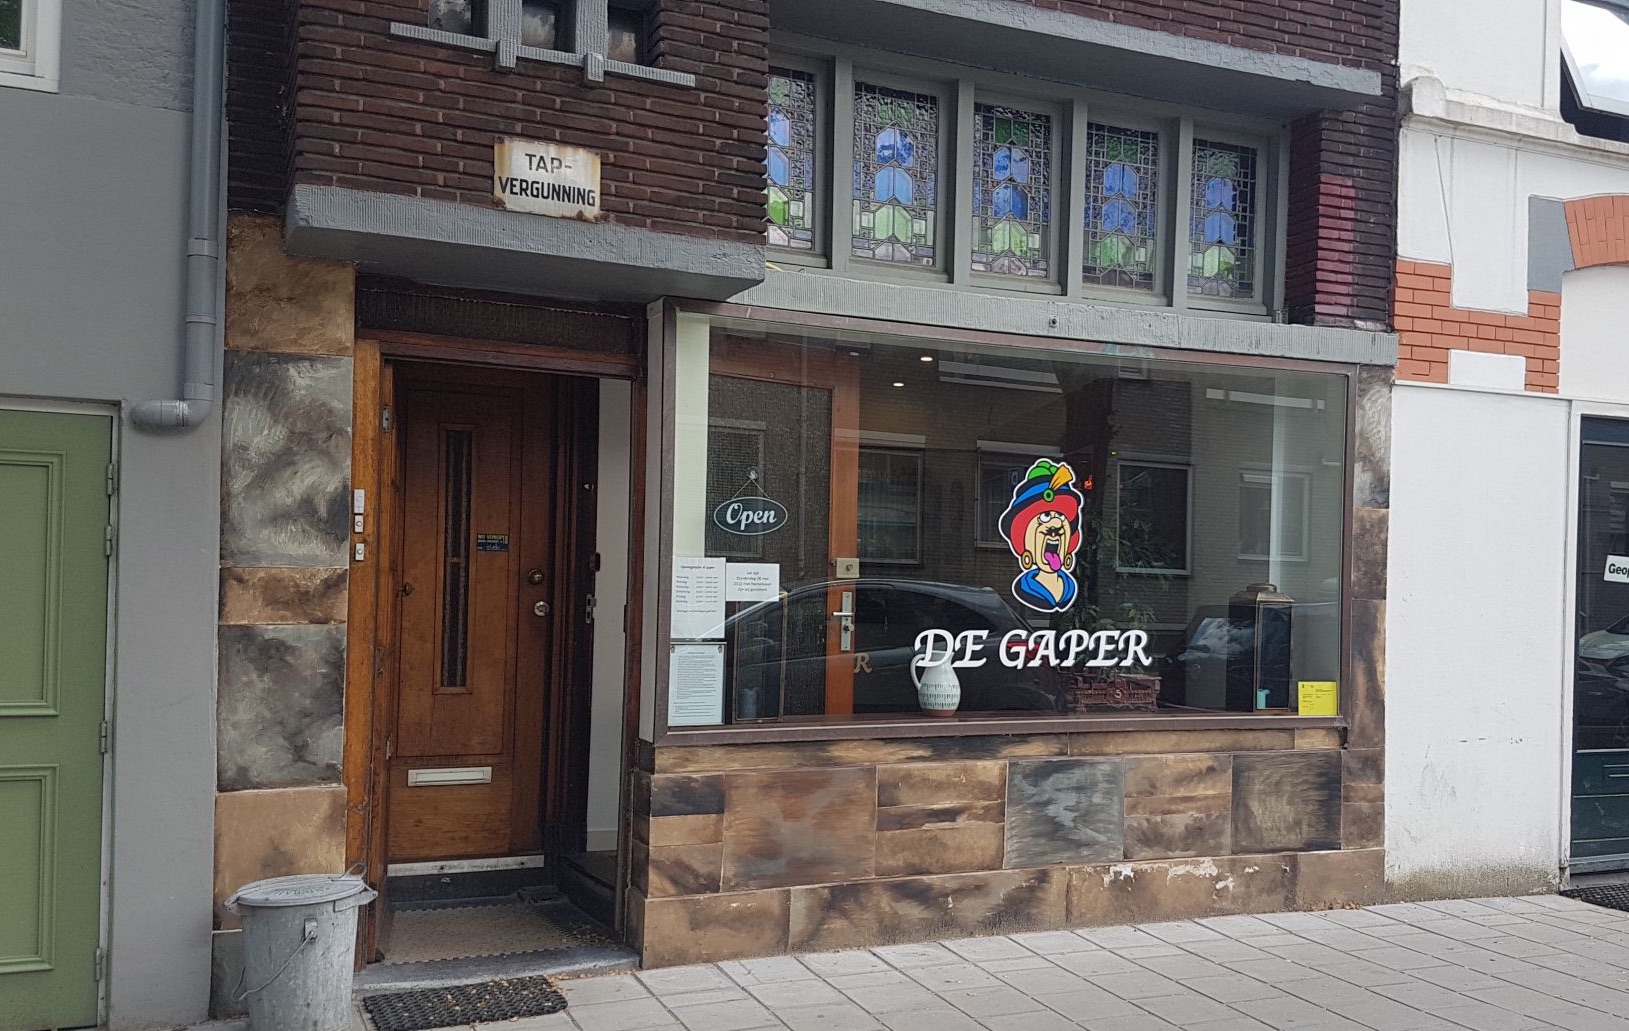 Coffeeshop De Gaper is open